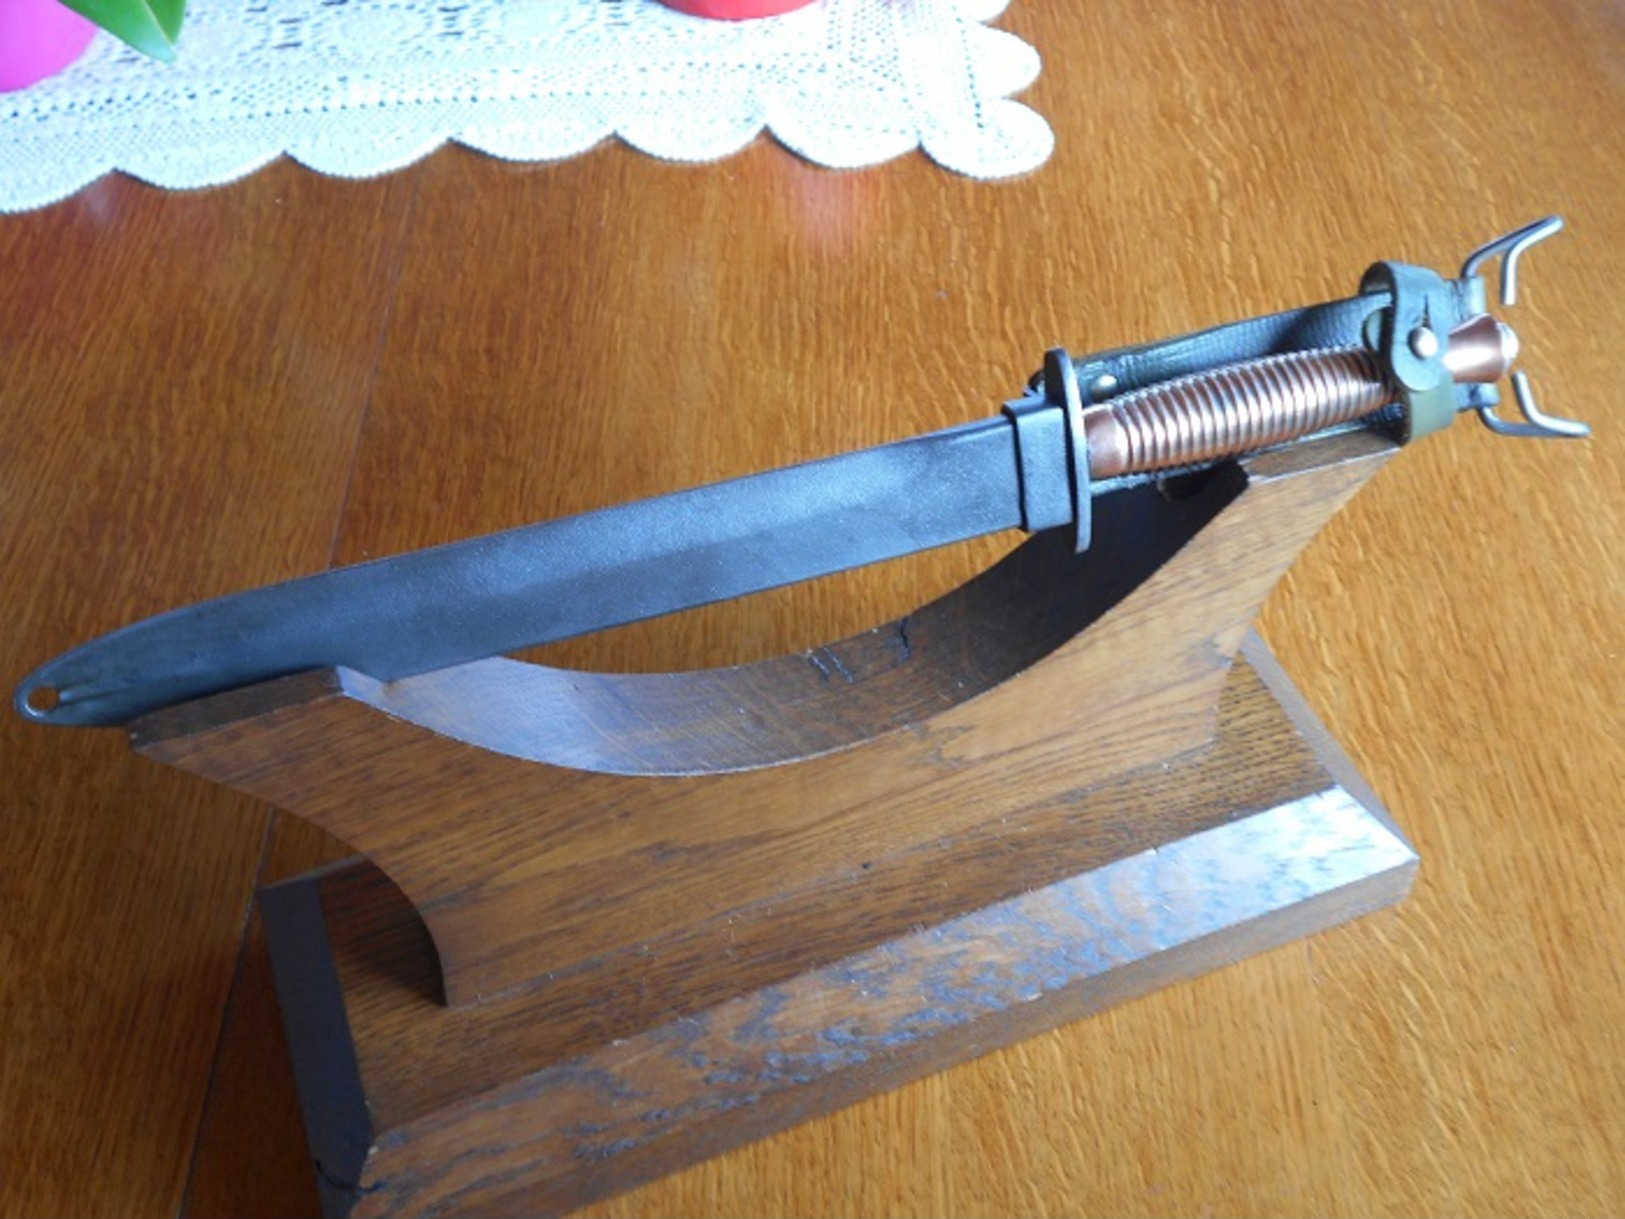 Dague Poignard Prachutiste  France (Dague Commando Fairbain Mod "3" Fourreau MAT 49:56) - Knives/Swords